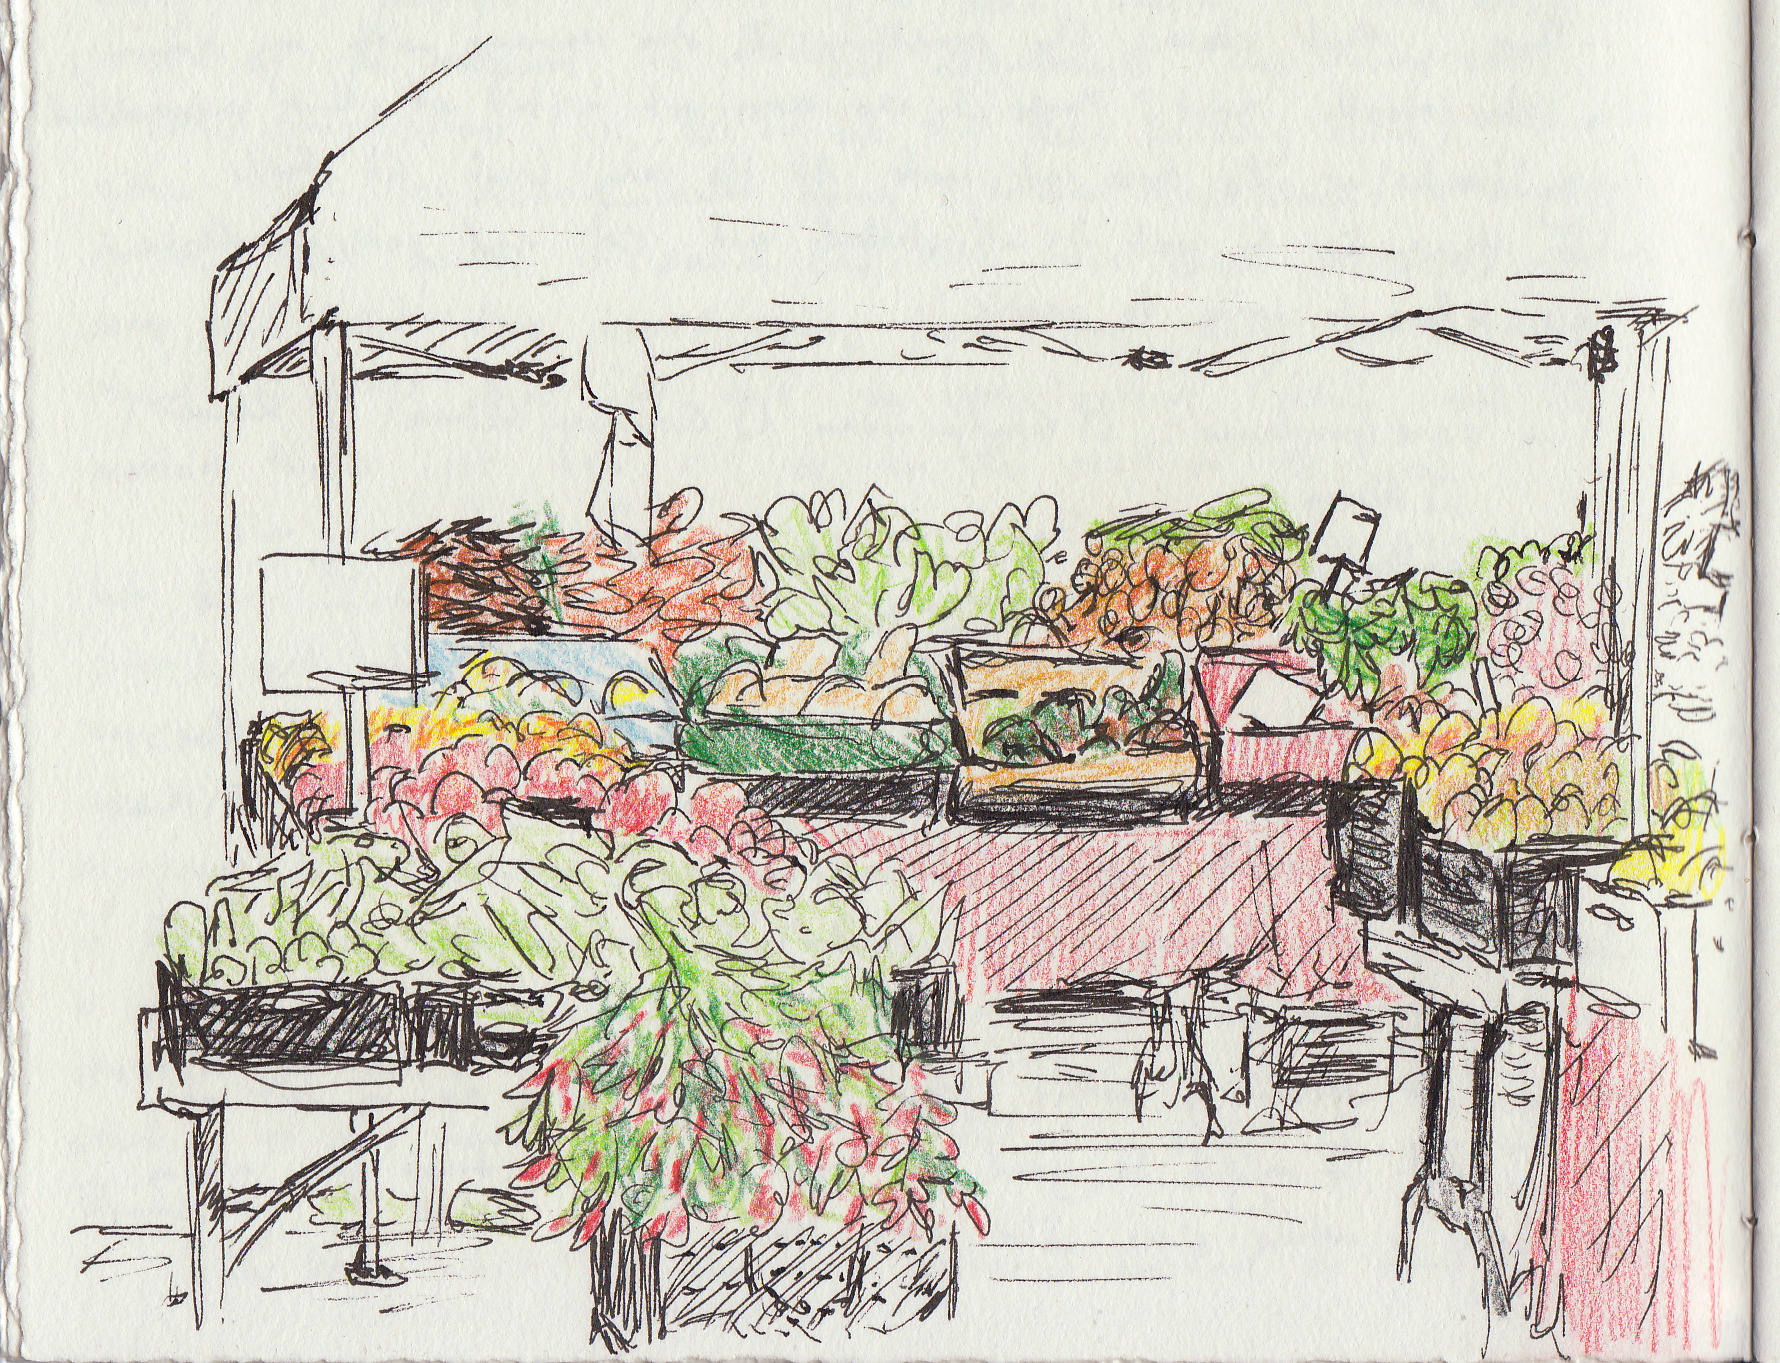 Farmers Market Drawing by J W Kelly  Pixels